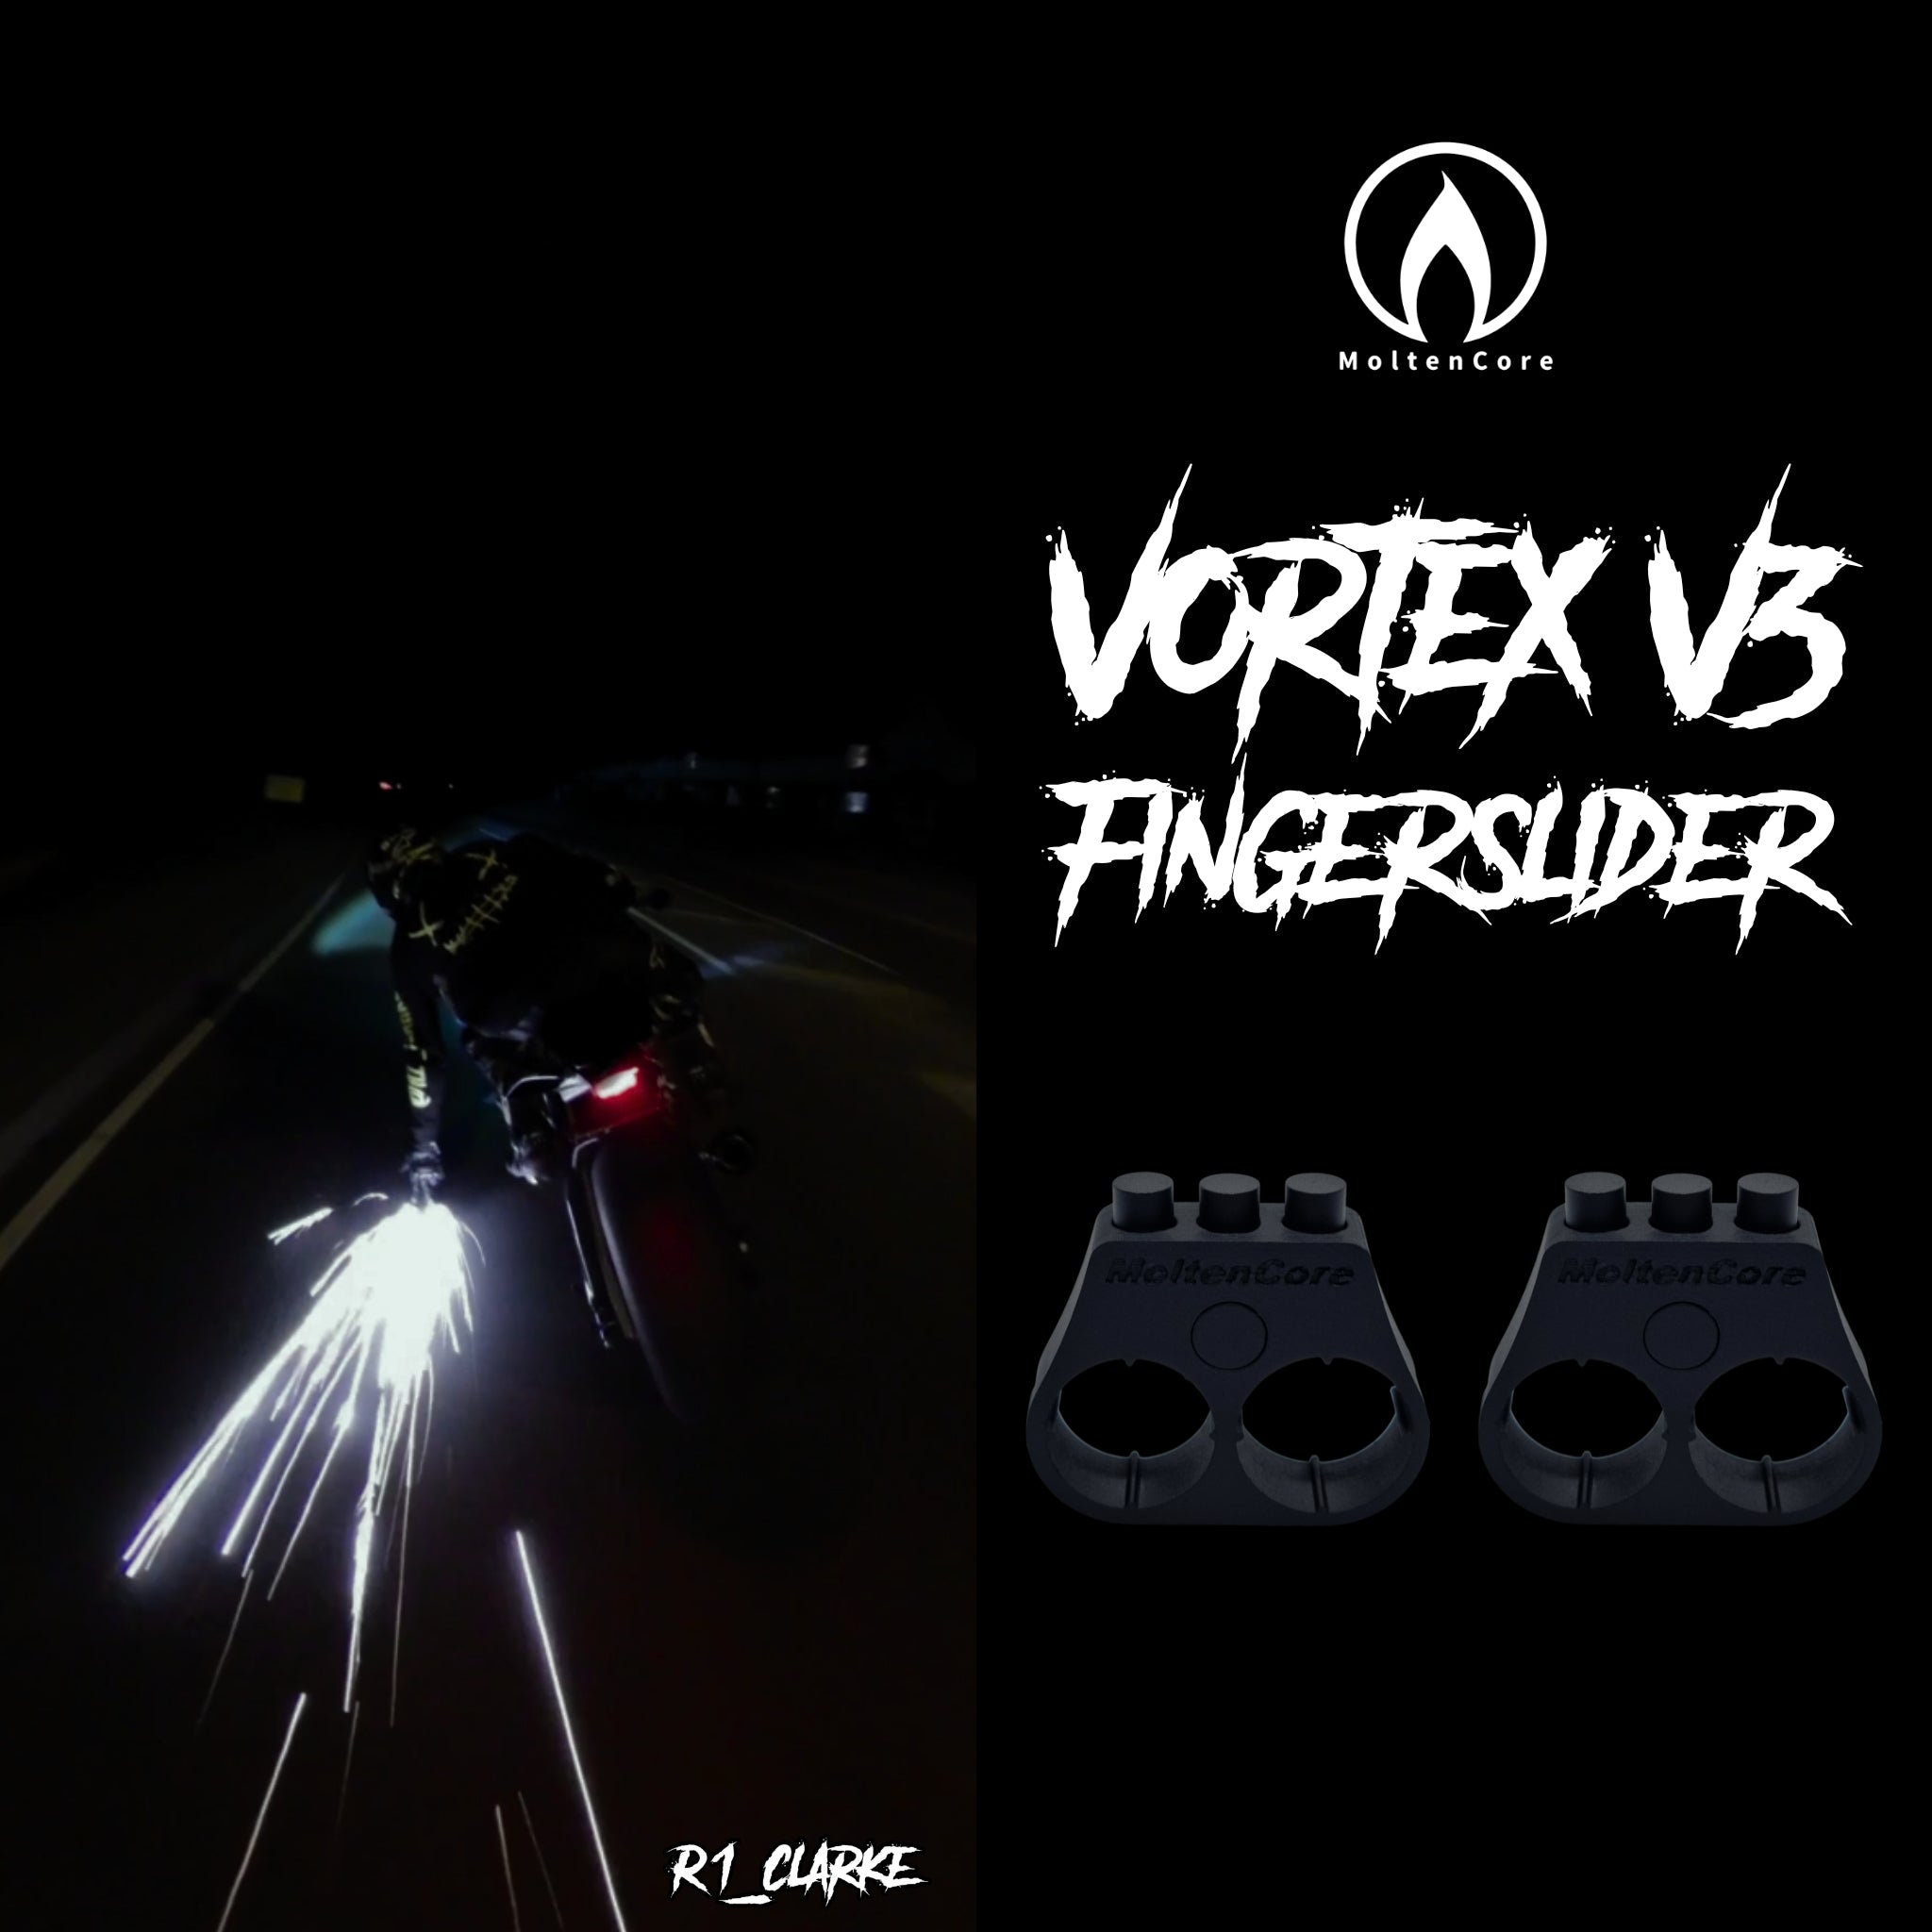 VortexV3 Fingerslider